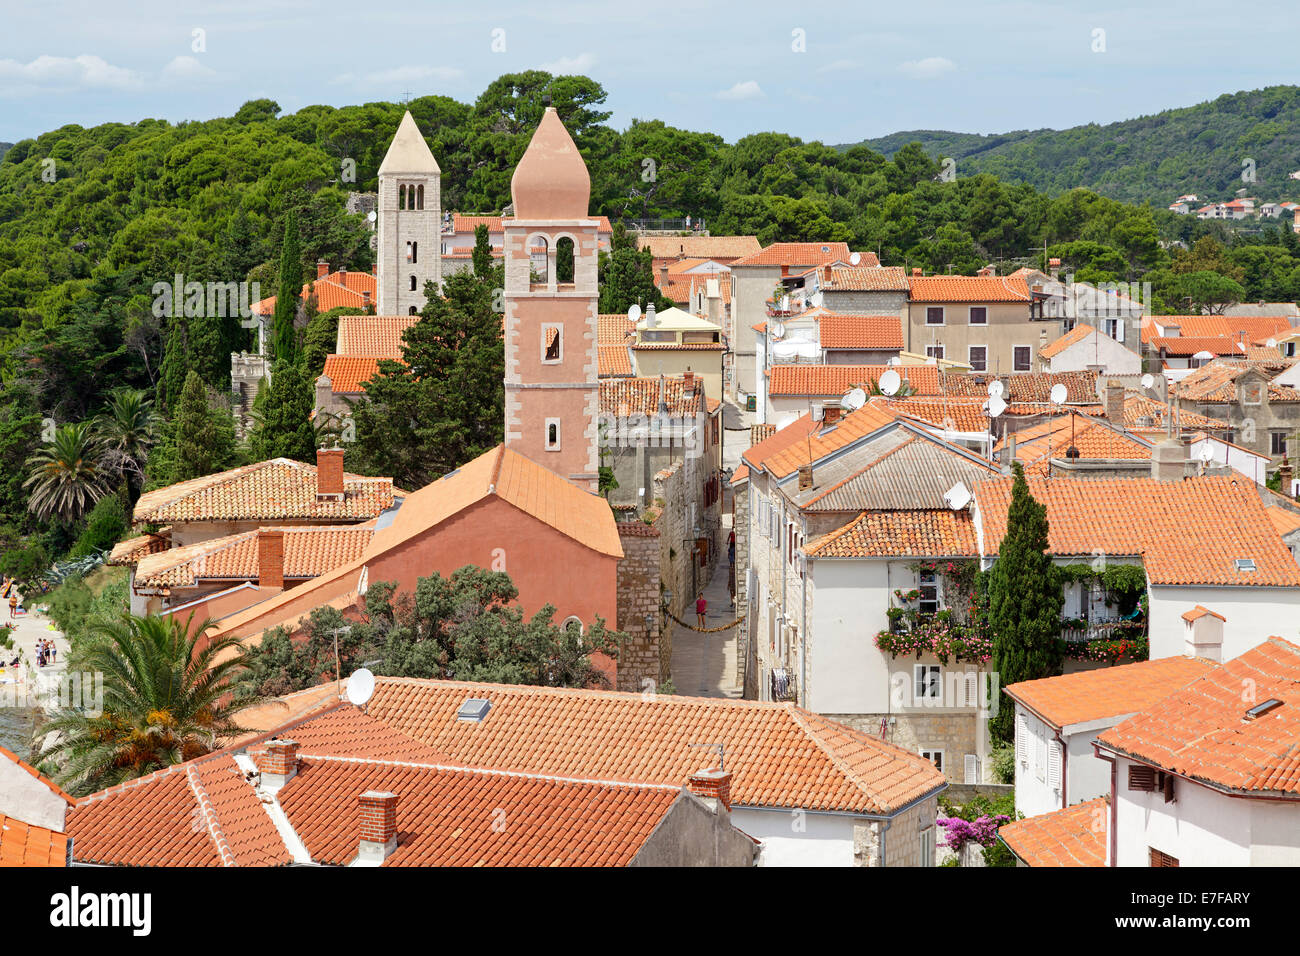 Vista della città vecchia con due torri della chiesa dalla torre di Santa Maria la beata, Città di Rab, isola di Rab, Croazia Foto Stock